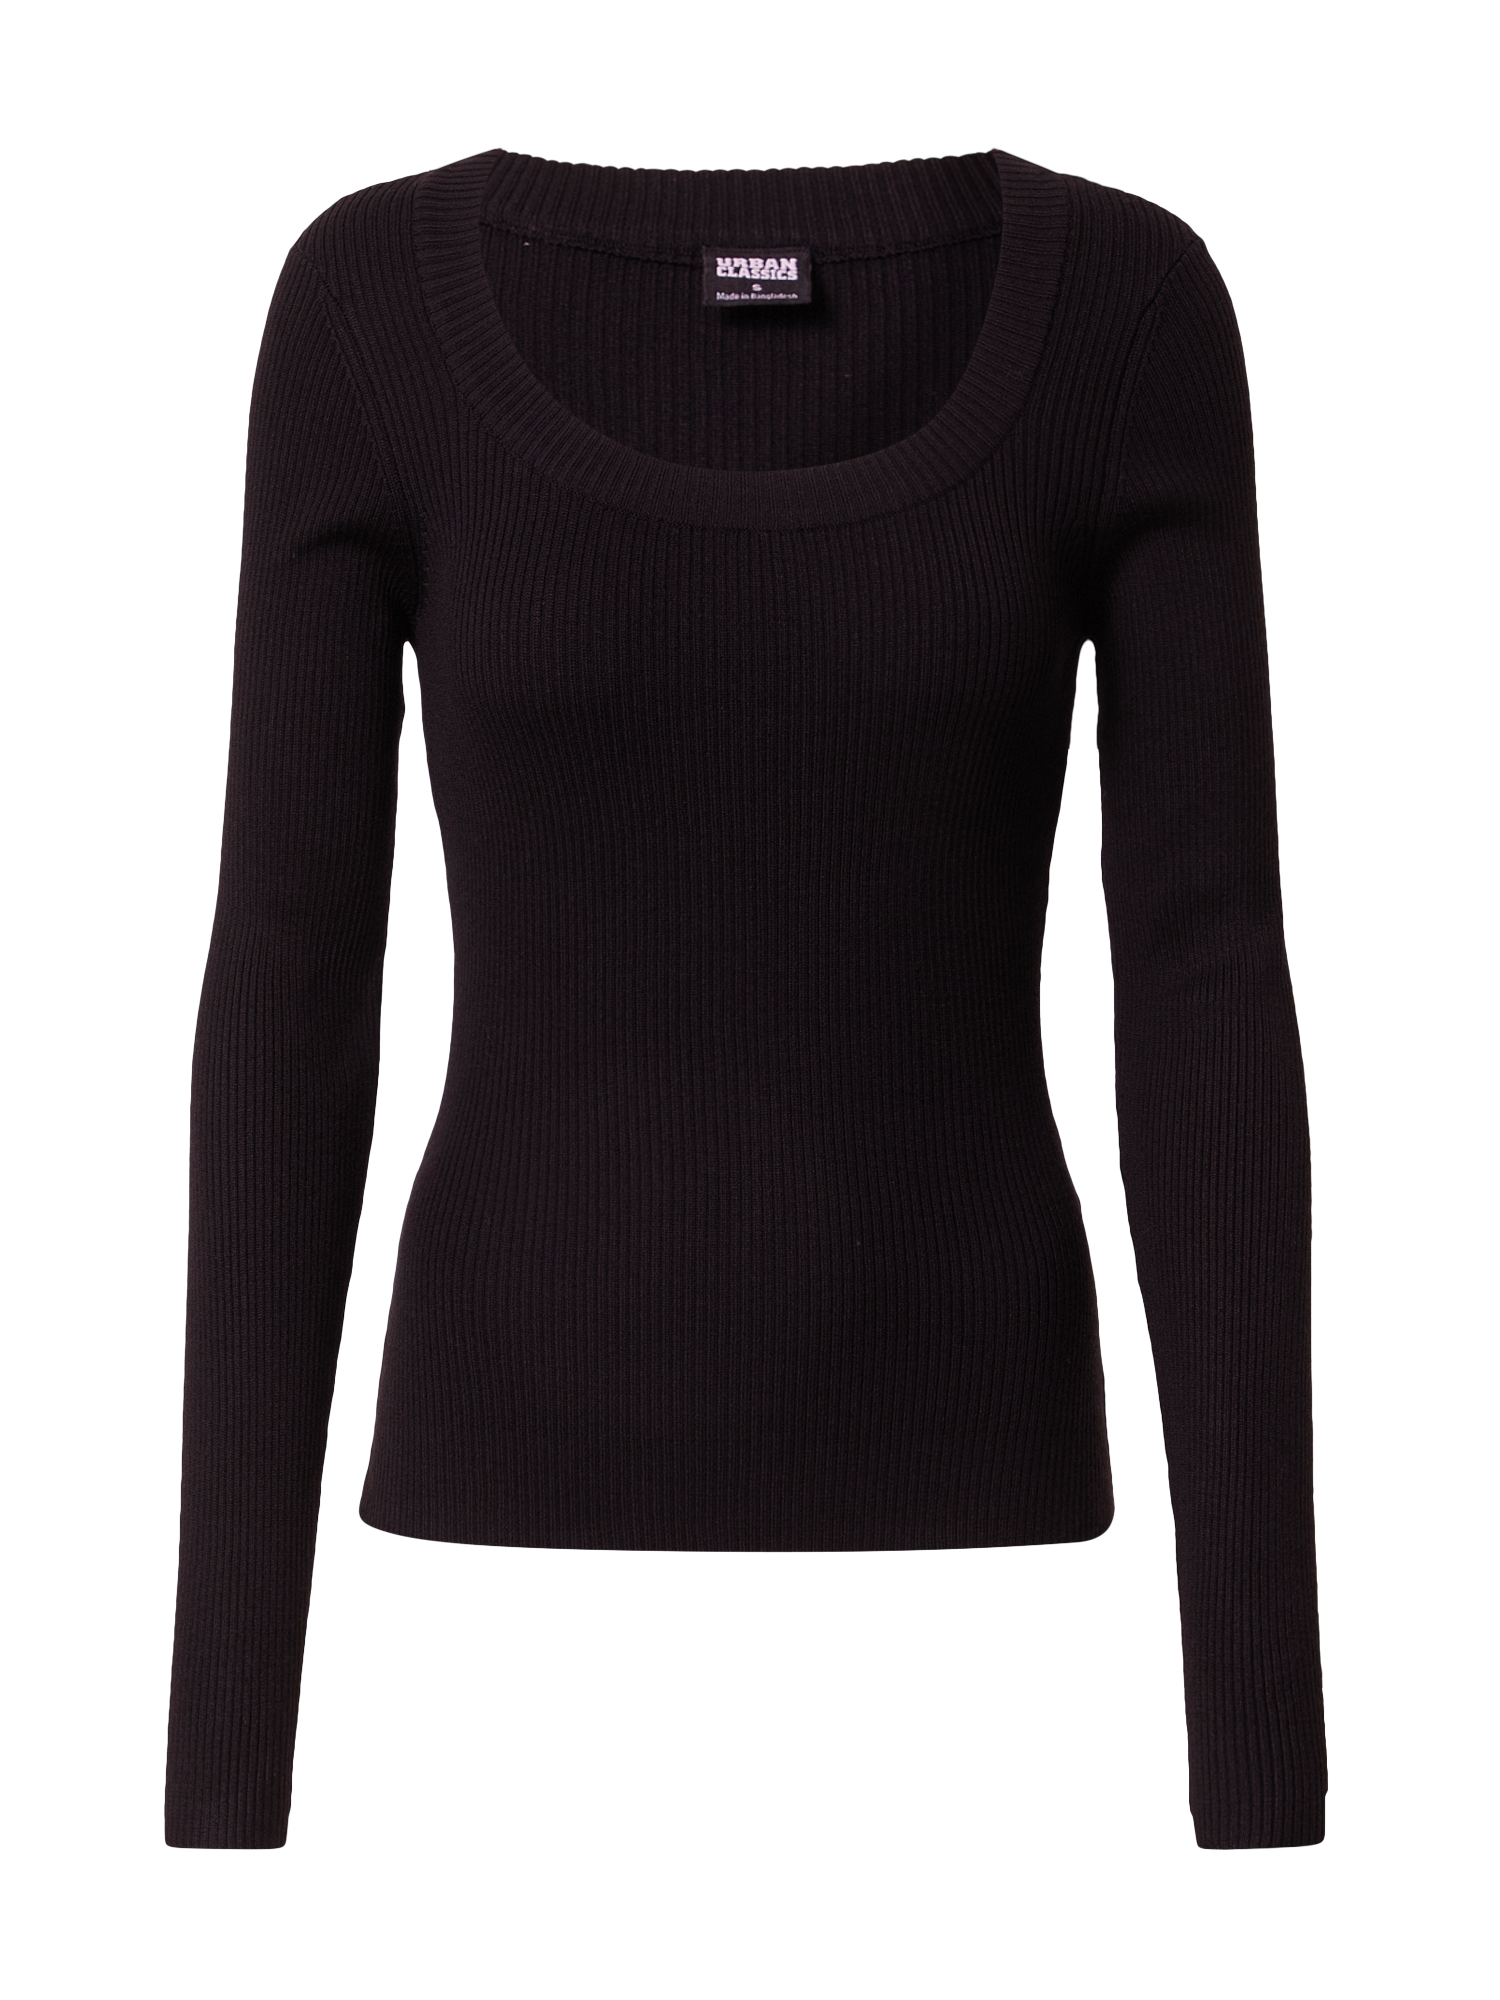 Swetry & dzianina Kobiety Urban Classics Sweter w kolorze Czarnym 